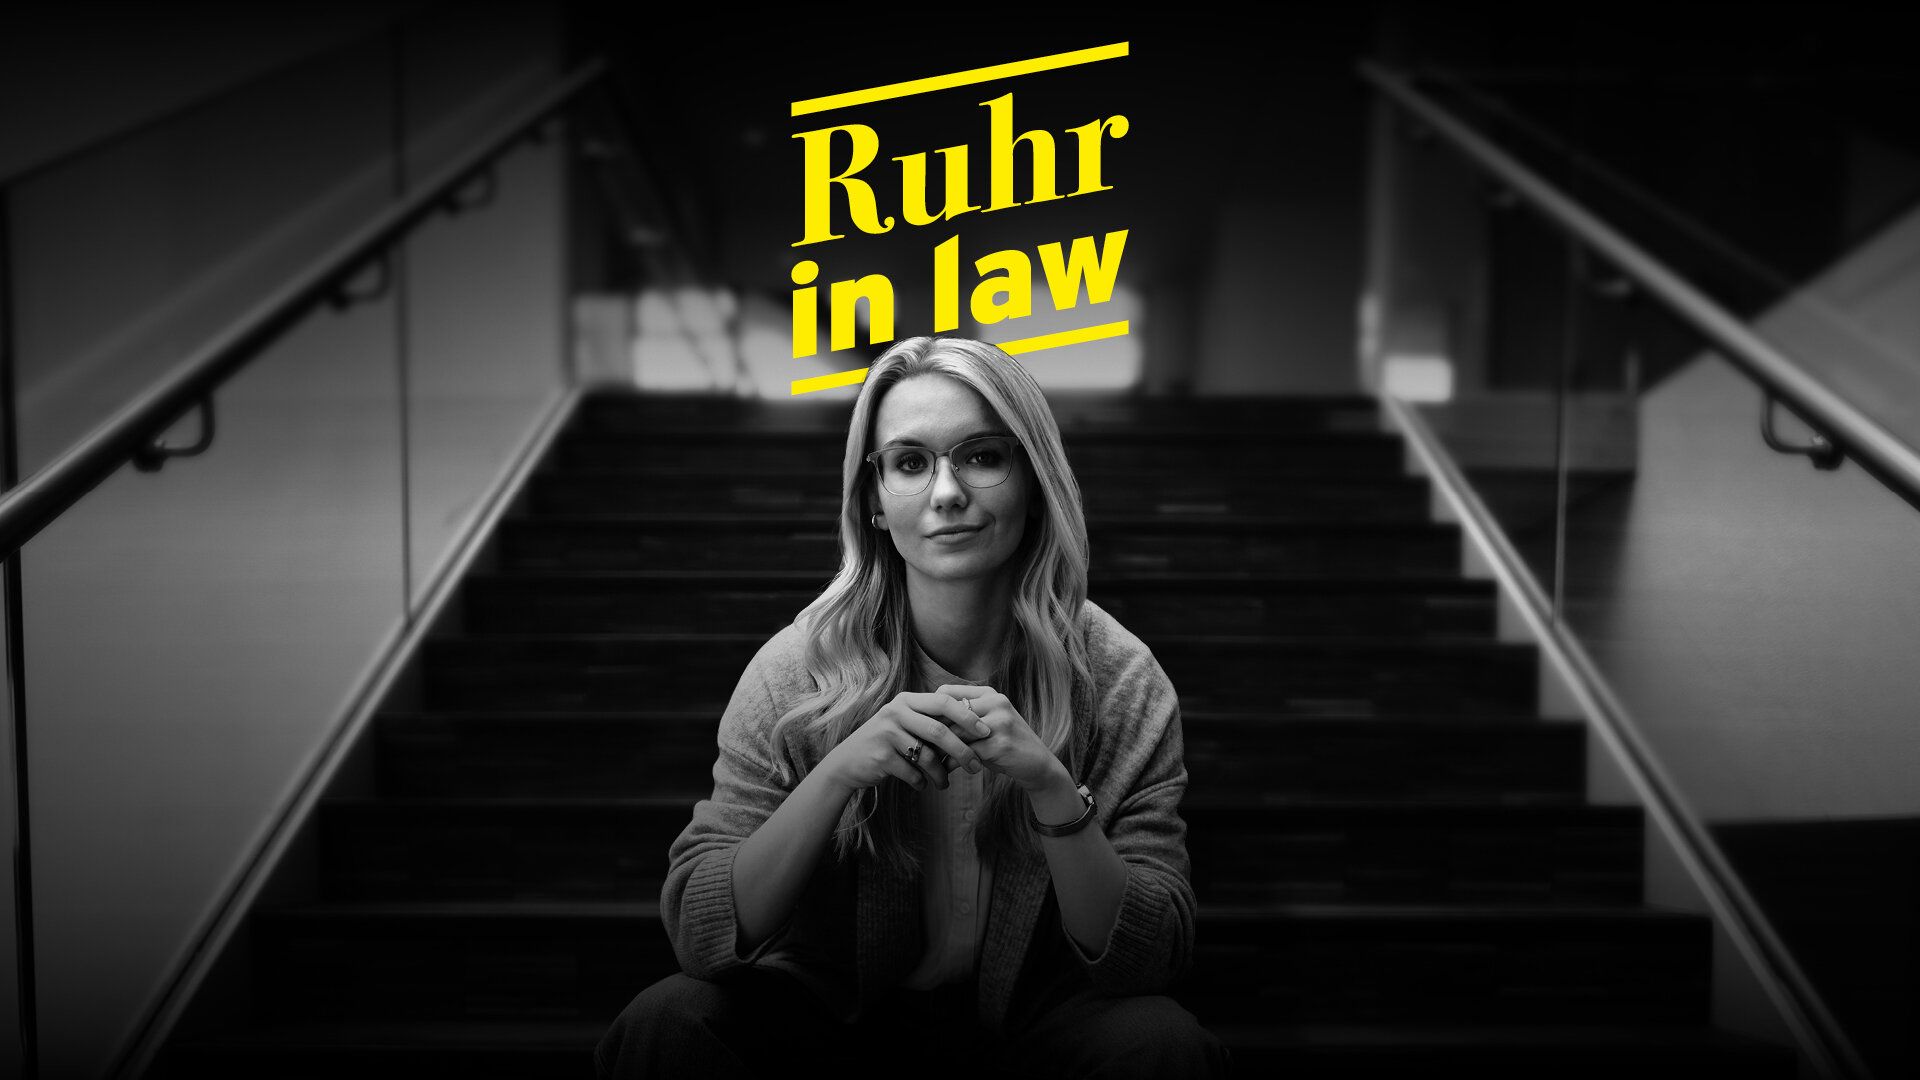 Eine Mitarbeiterin der Justiz sitzt auf einer Treppe in einer leeren großen Lagerhalle. Dazu der Text "Ruhr in law". 